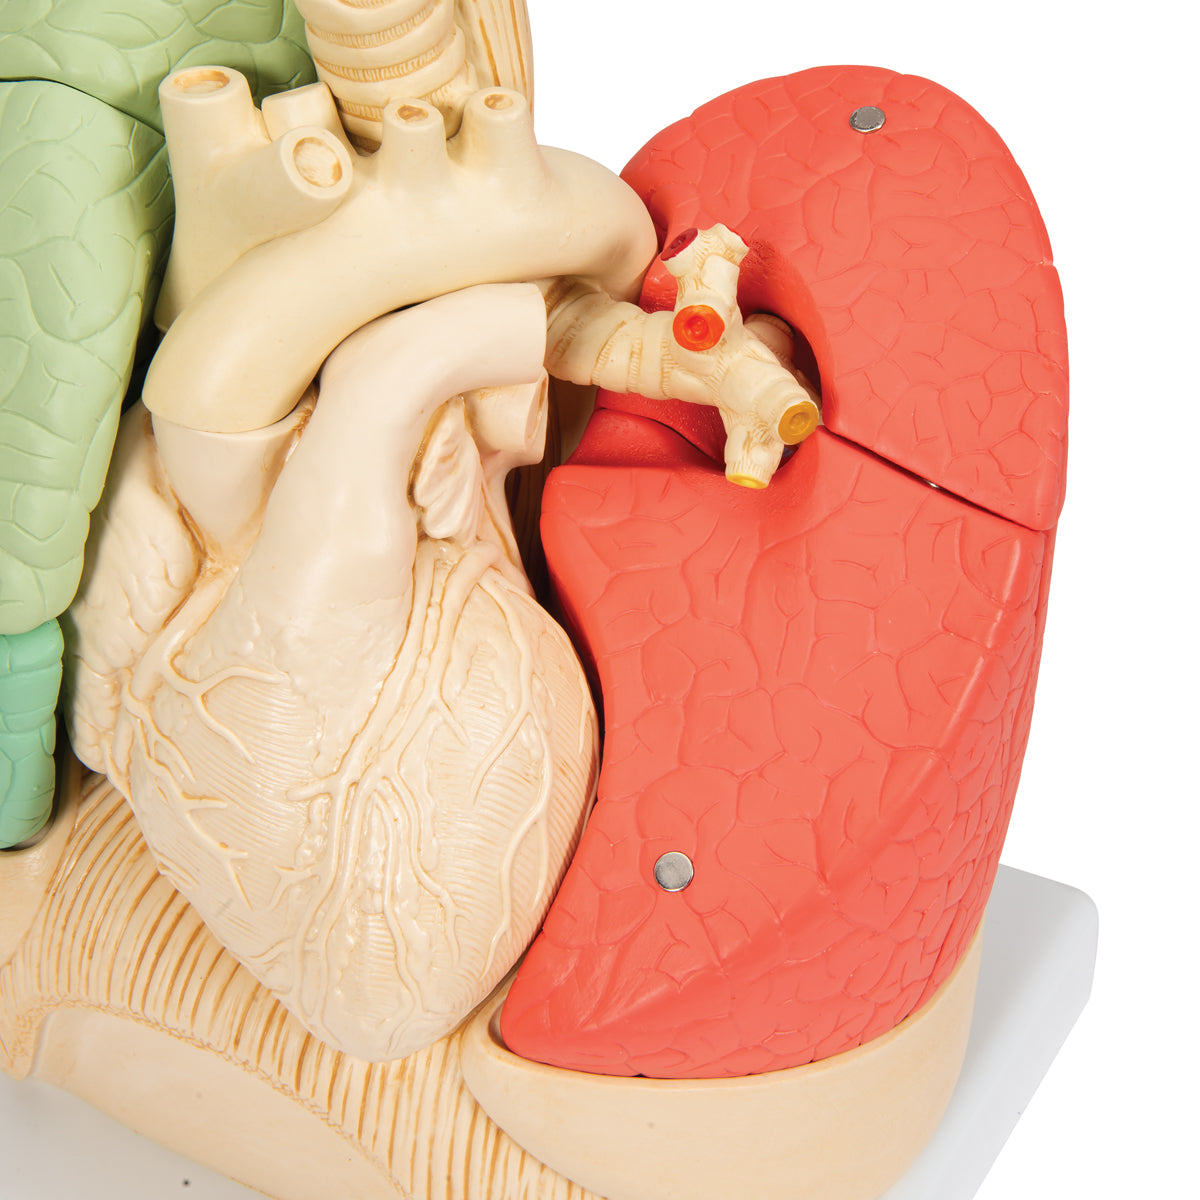 Lungemodel med hjerte og bronkier, opdelt i segmenter